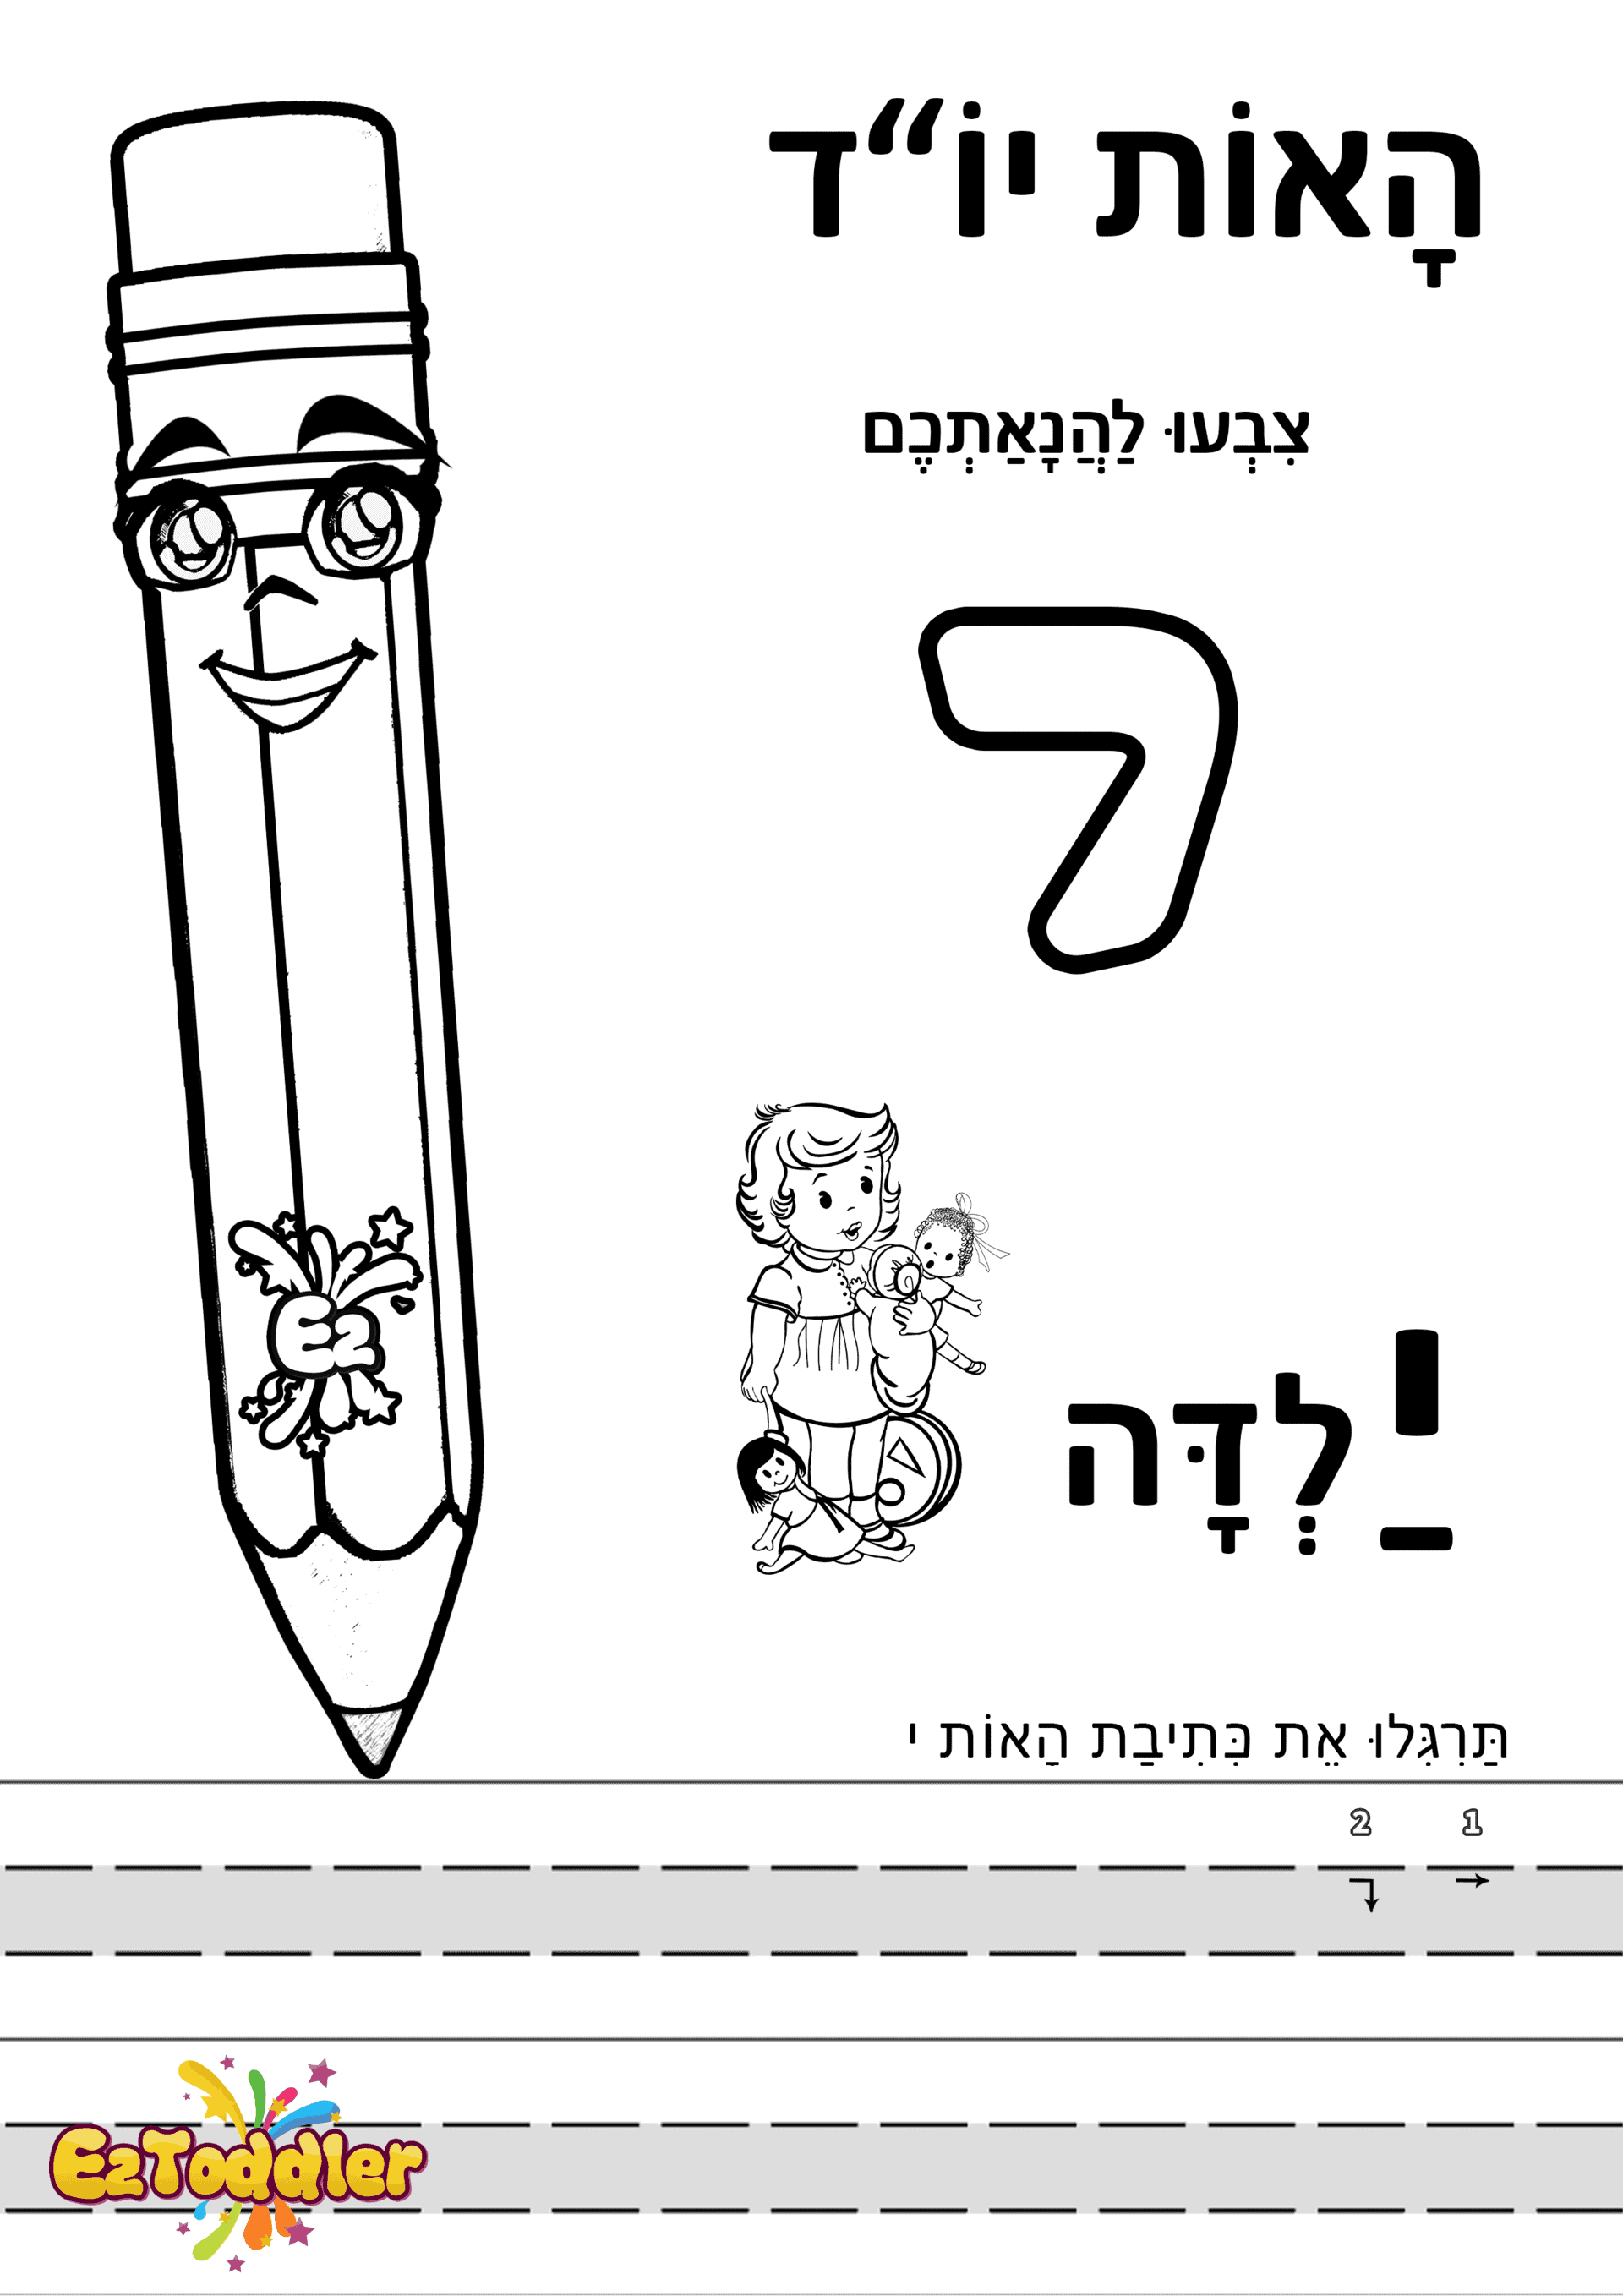 דפי עבודה האות י בדפוס • דפי עבודה אותיות בעברית | EZToddler